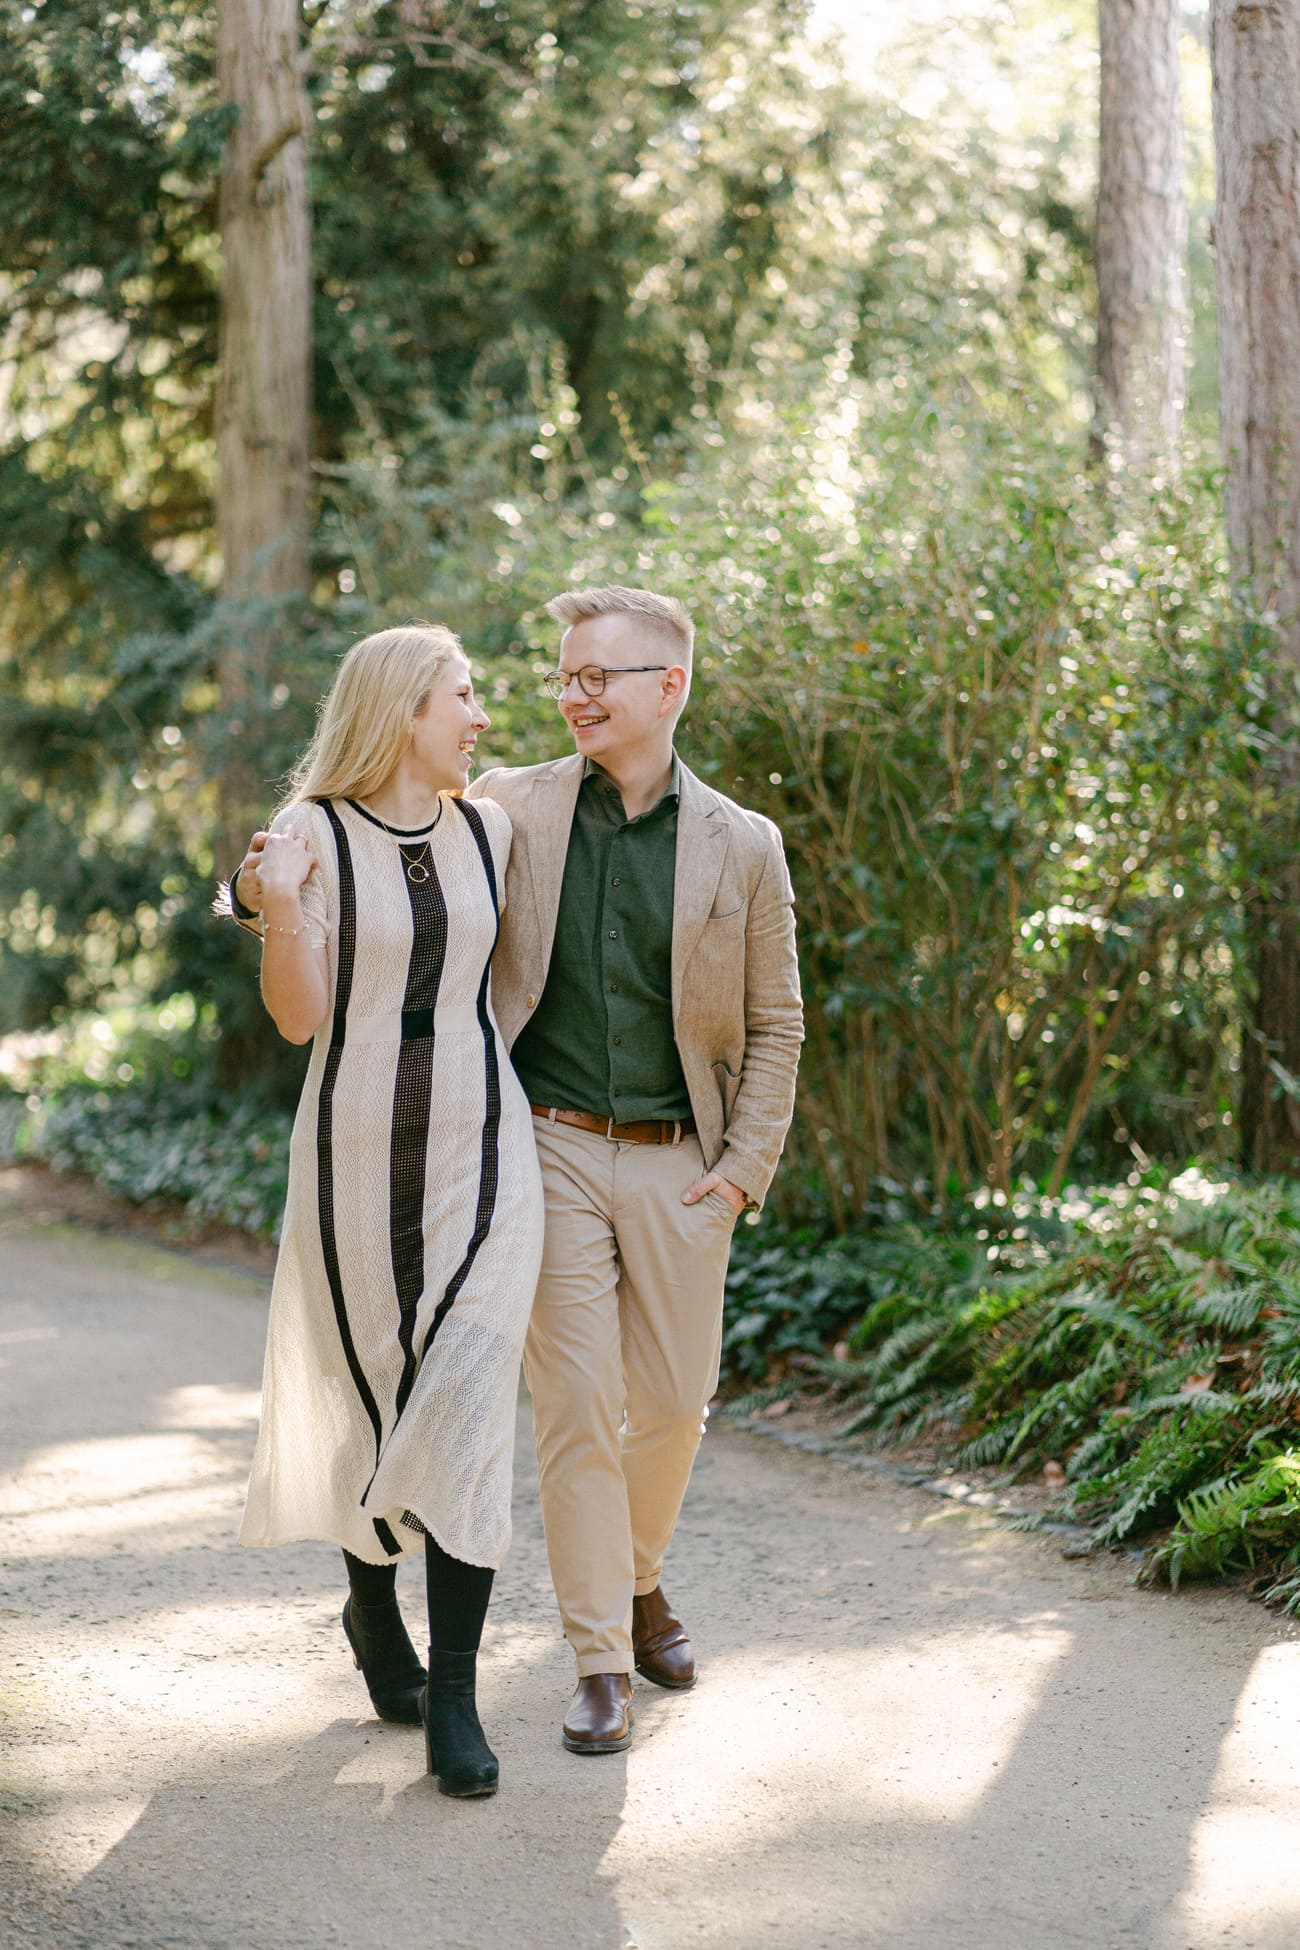 Entspannte Verlobungssession im Palmengarten: Ein glückliches Paar läuft Hand in Hand, die Frau in einem modischen, langen Kleid und der Mann in einem smarten grünen Hemd und Jackett.